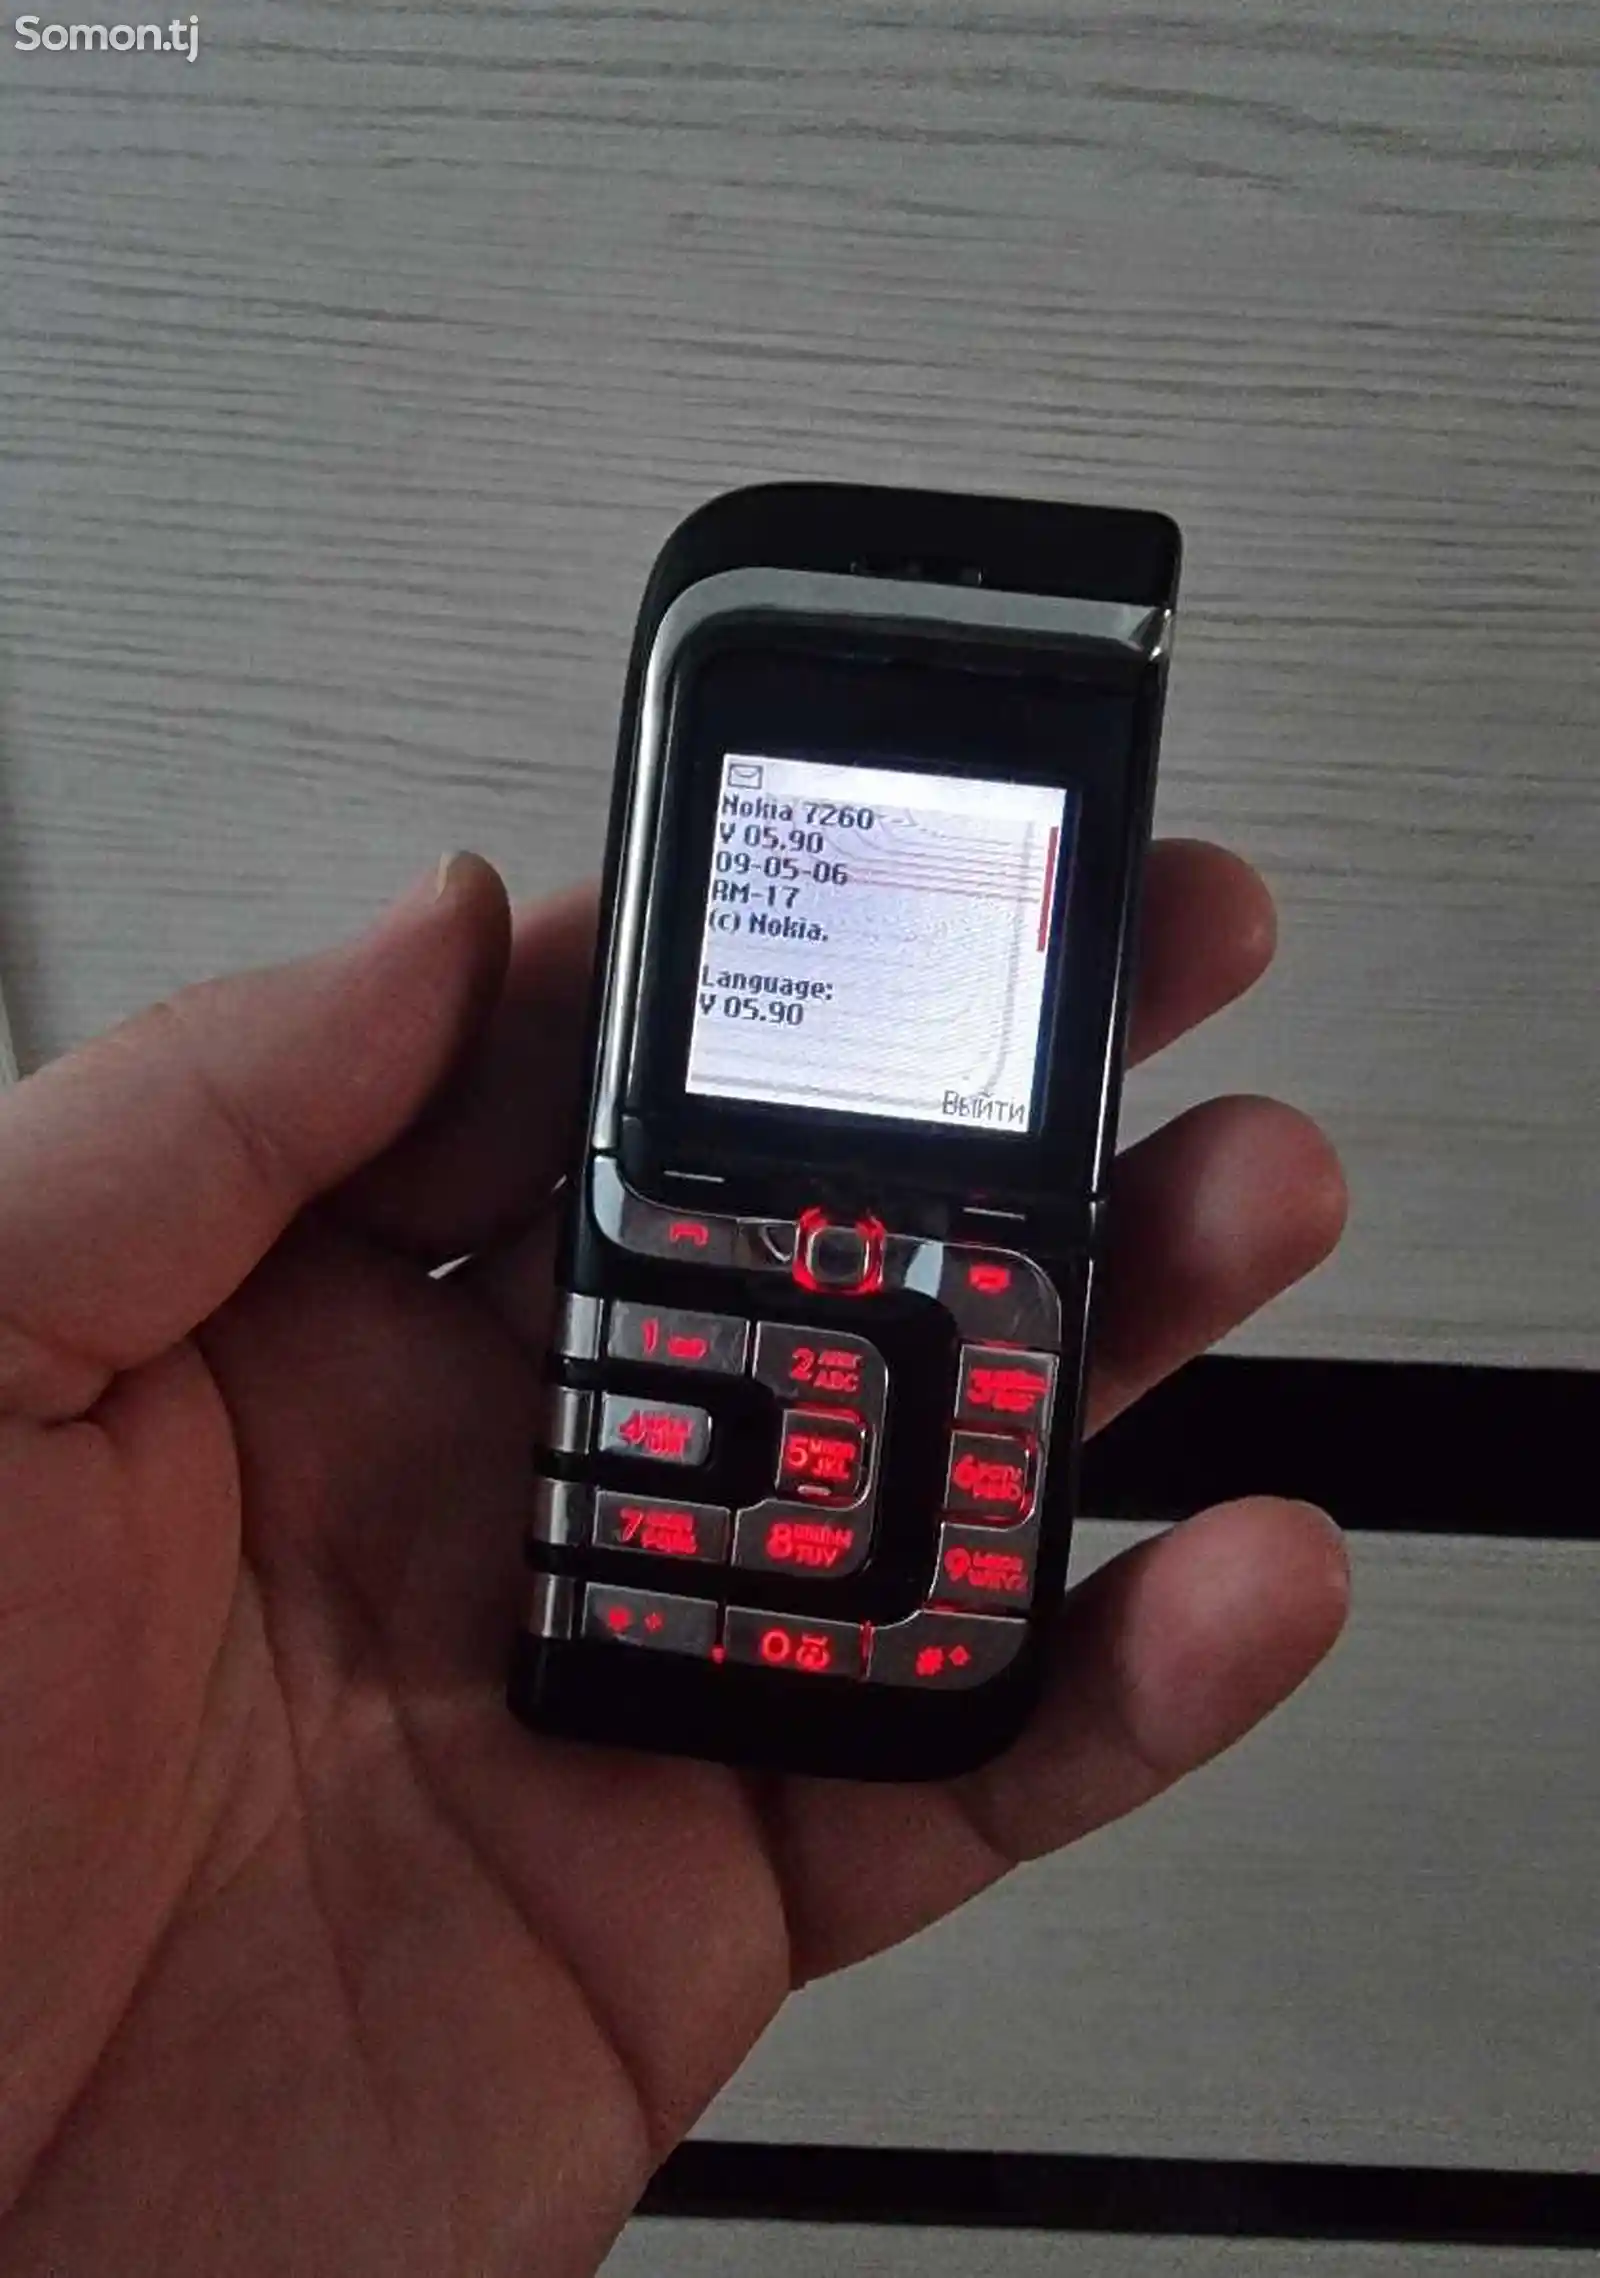 Nokia 7260-2